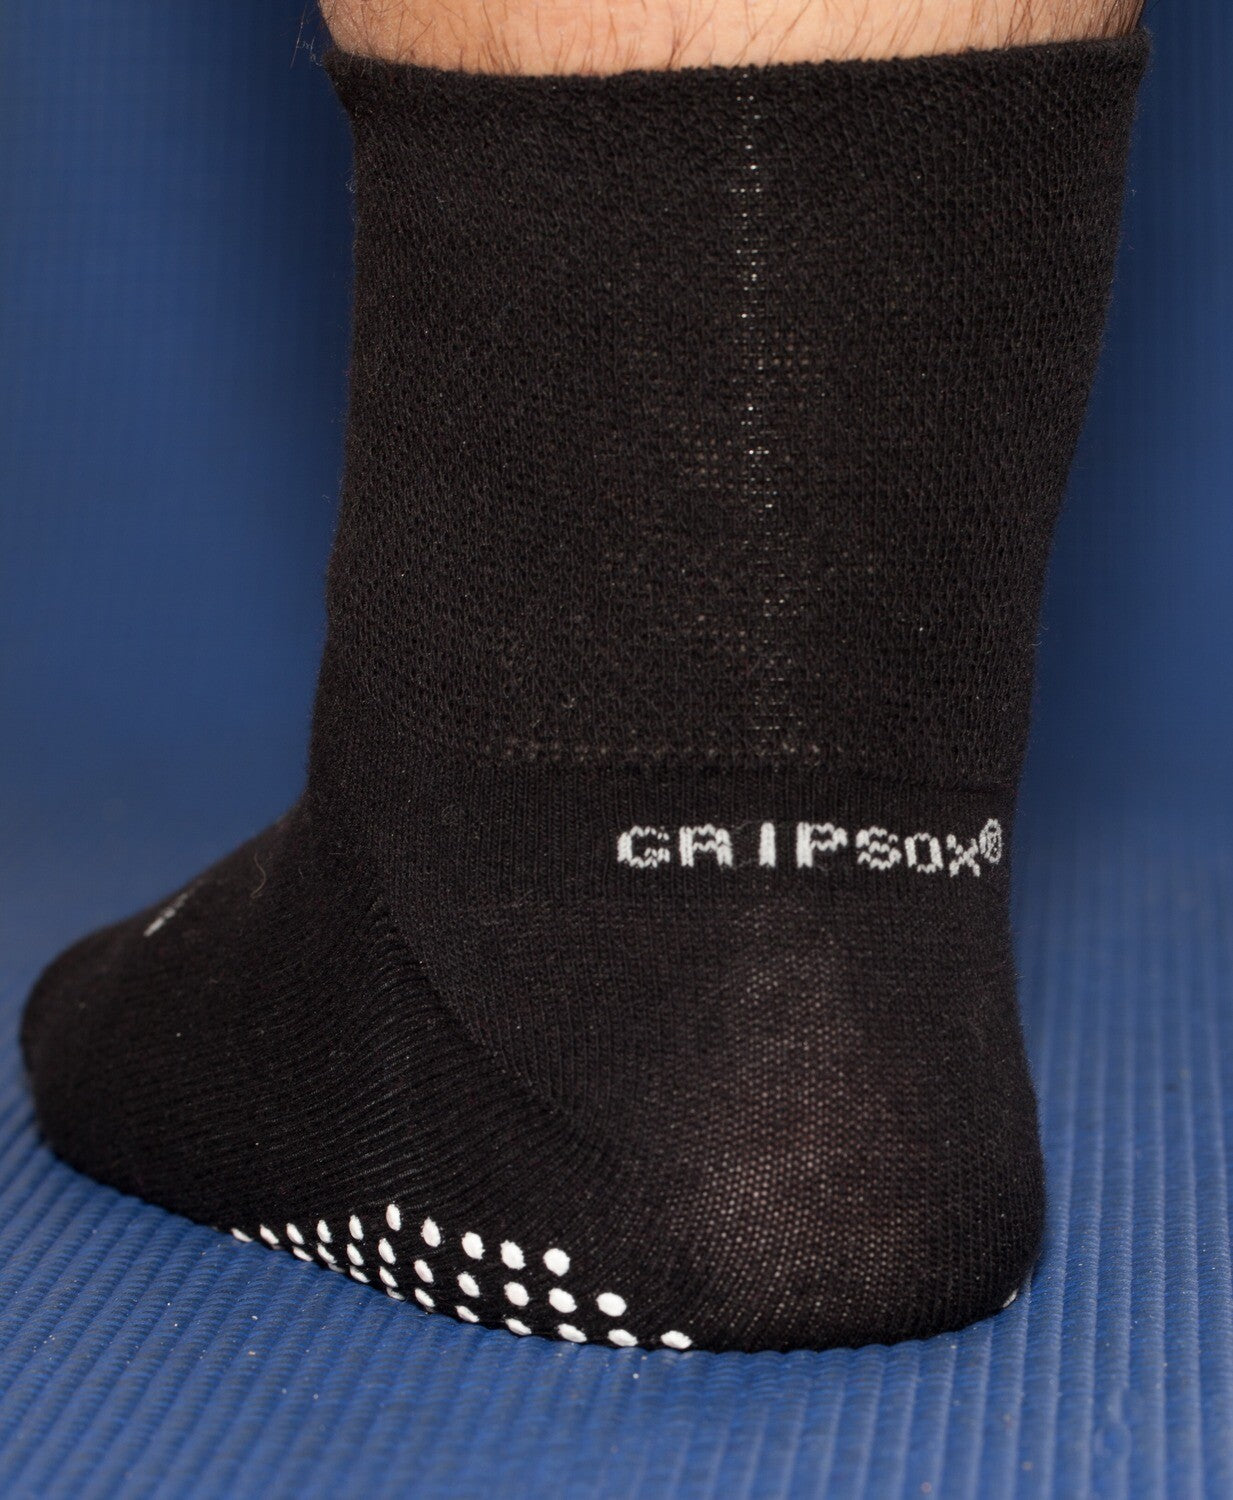 Maxi Hospital Non-Slip Socks in Black